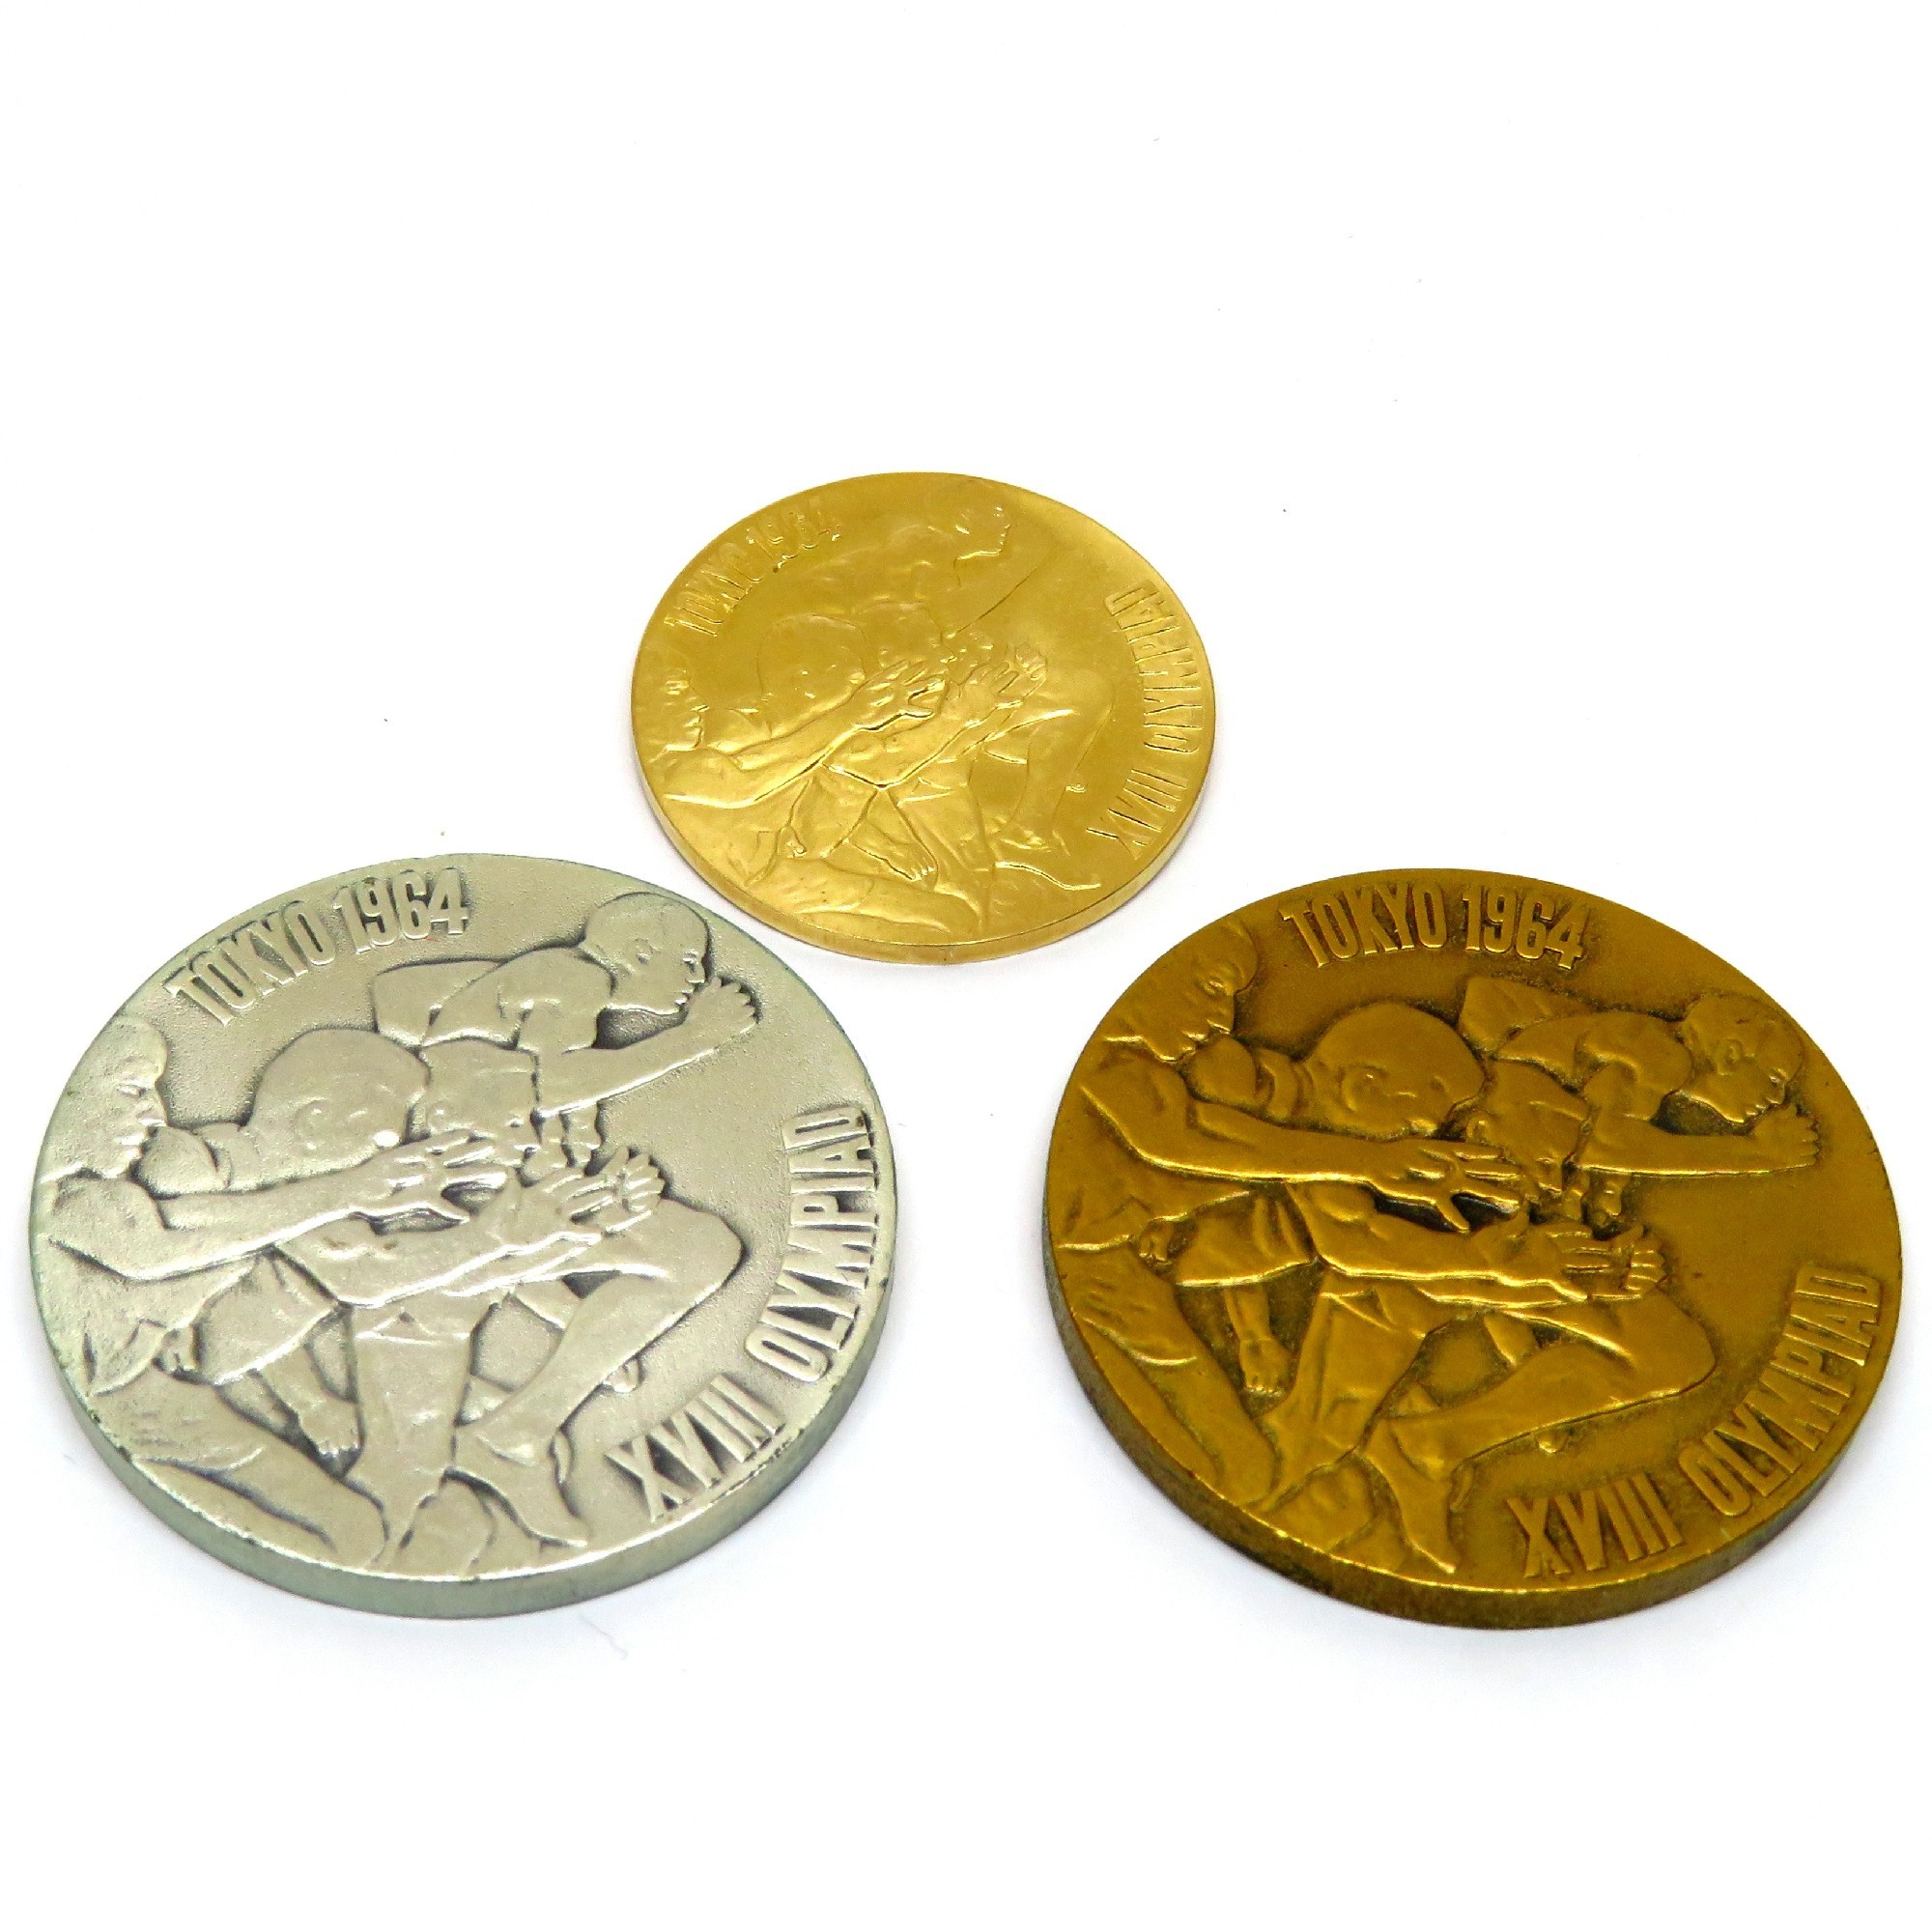 1964年 東京オリンピック記念硬貨 ケース入り 記念硬貨 投資 - 美術品 